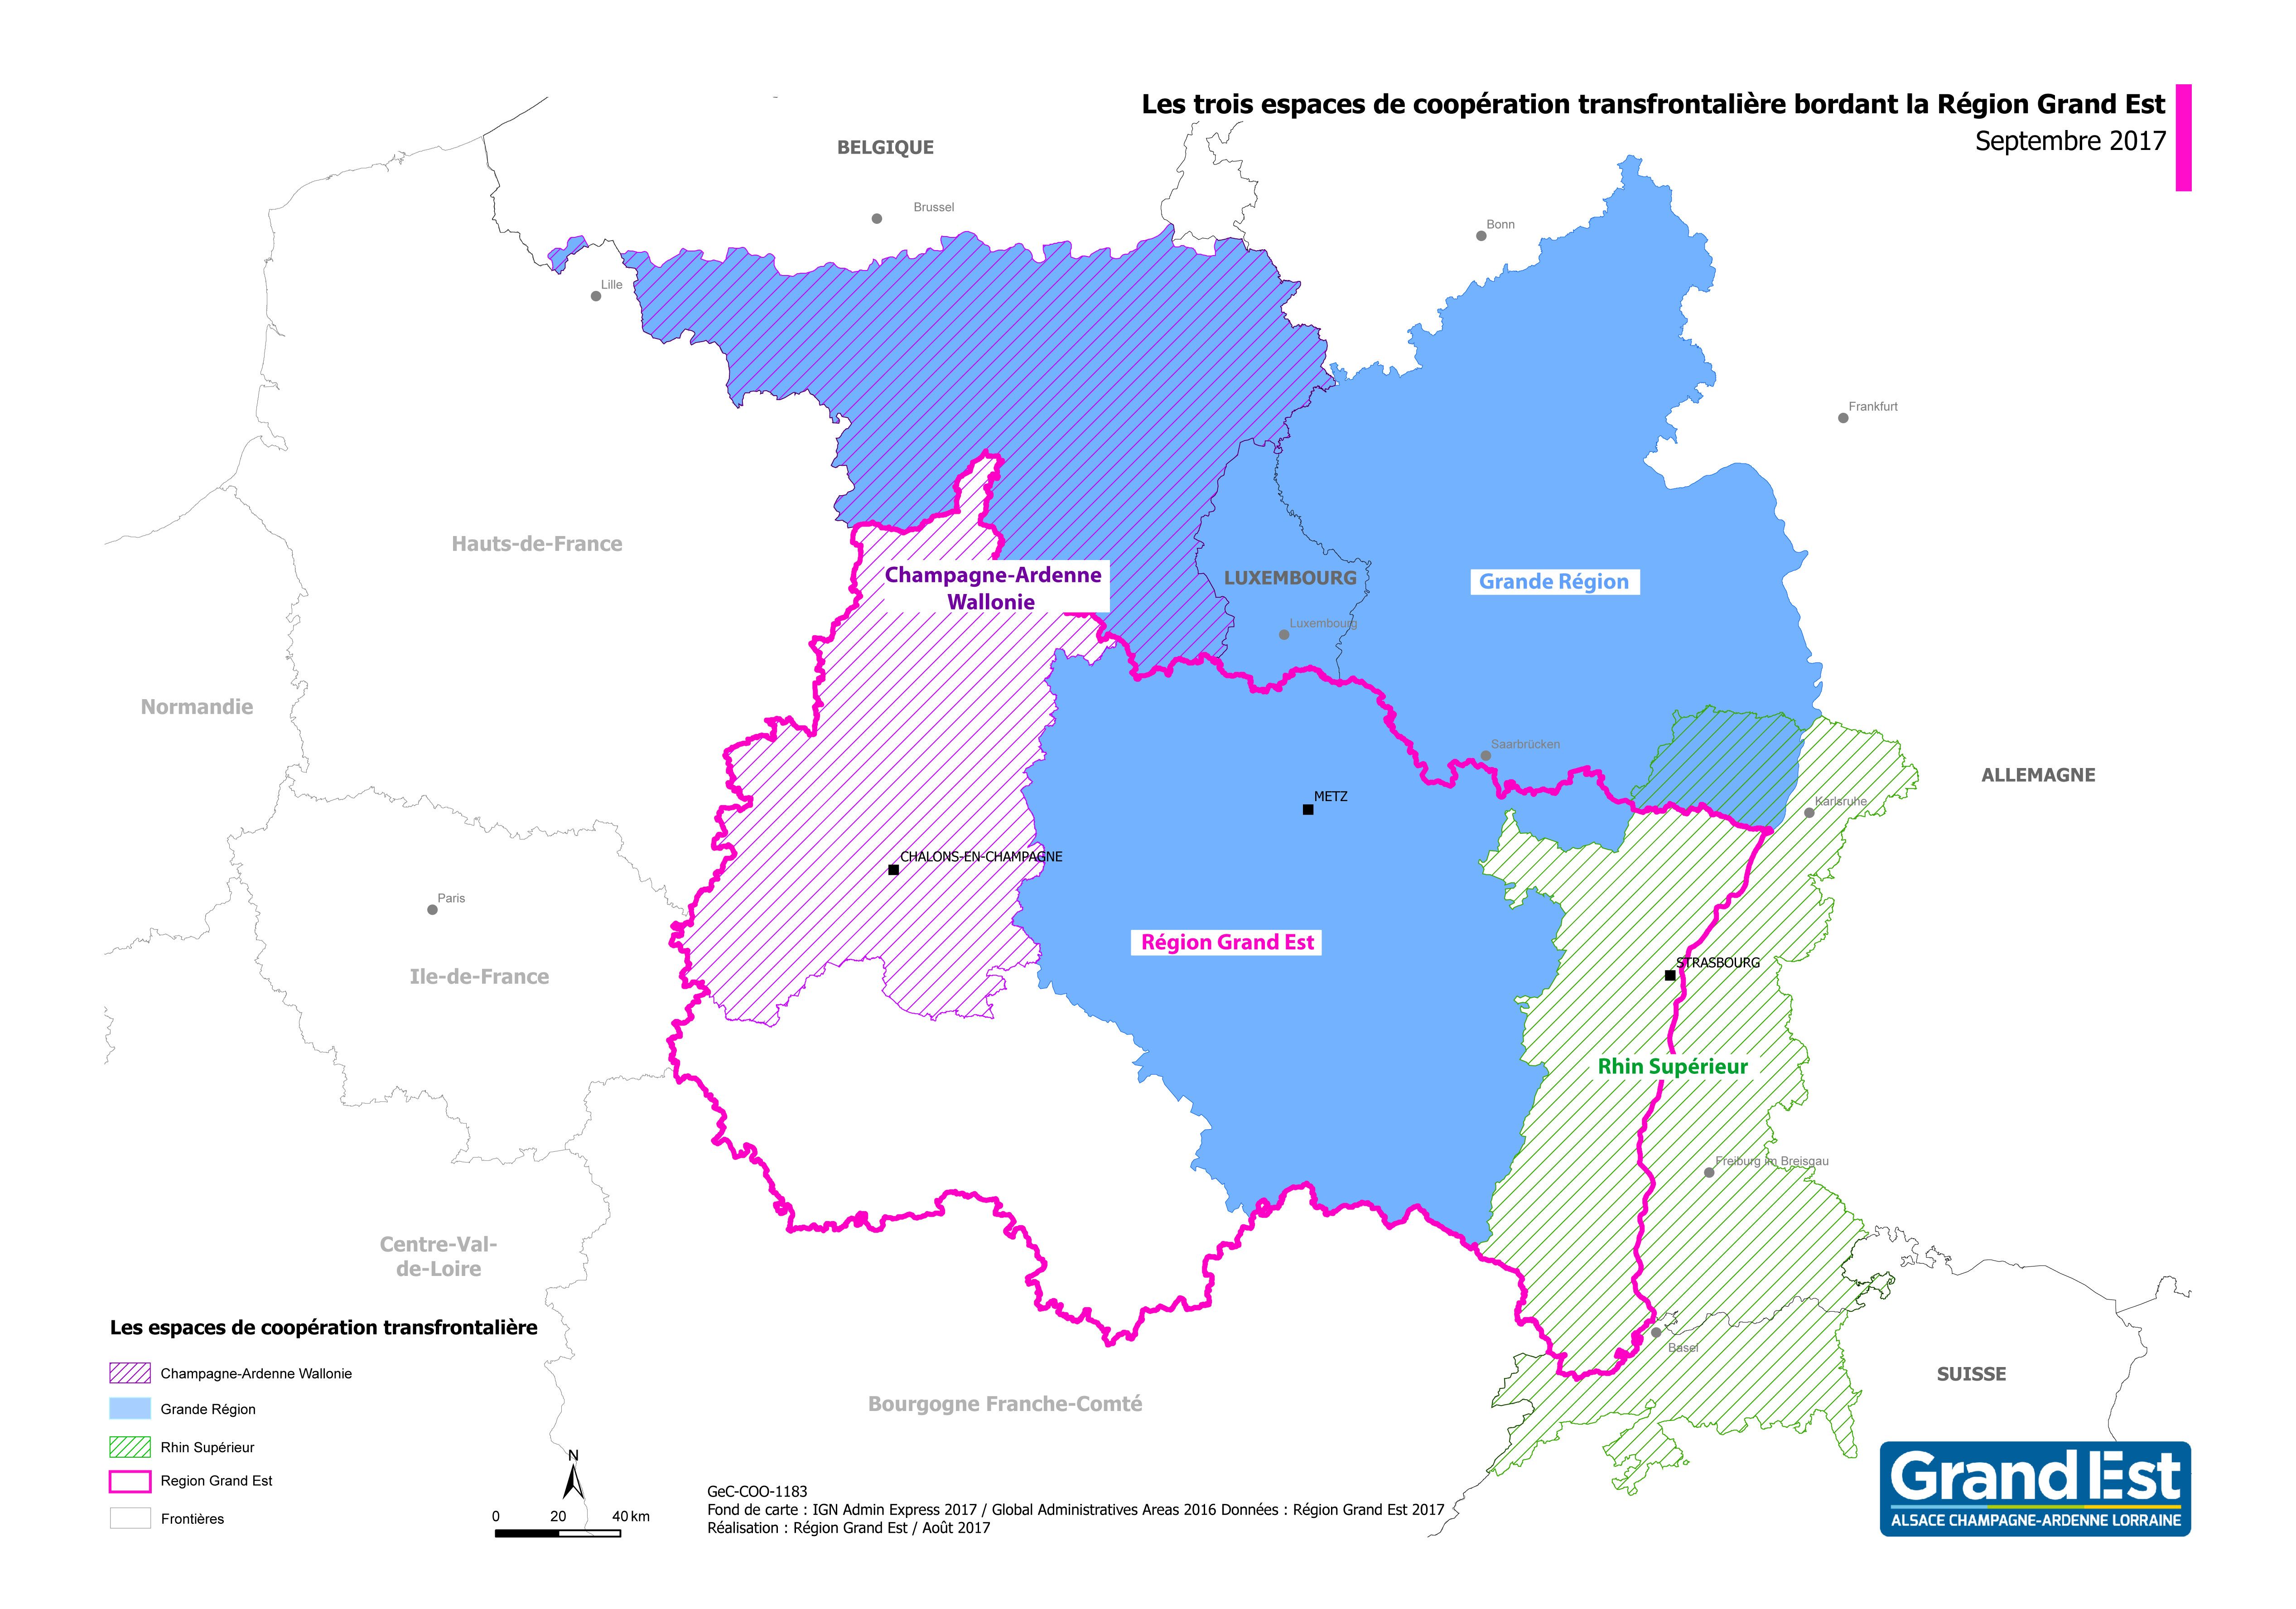 France / Allemagne : Un socle transfrontalier commun en matière de santé